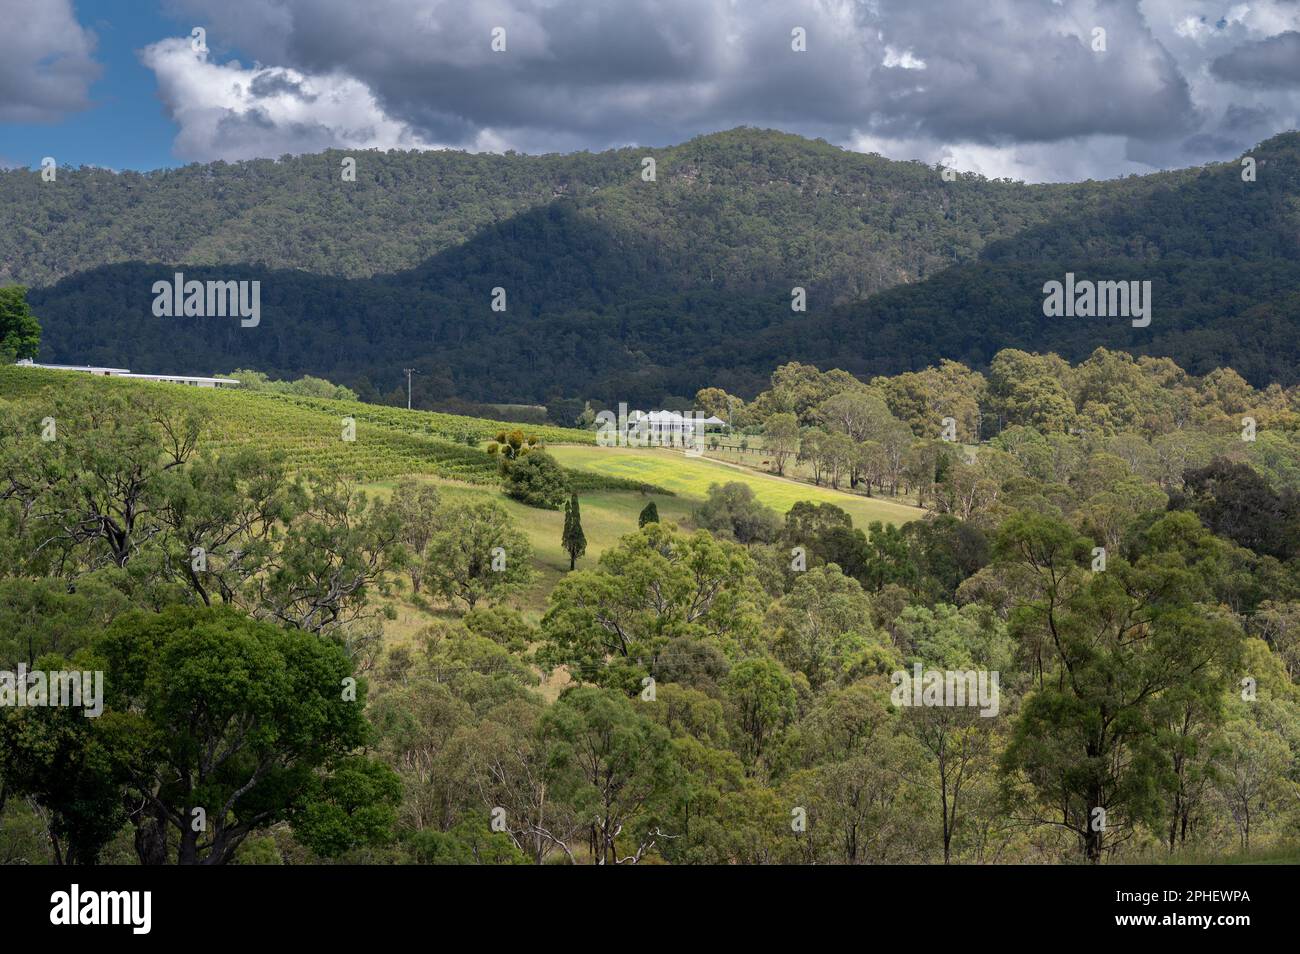 Un trattore spruzza le viti dopo che le uve sono state raccolte nella regione vinicola della Hunter Valley del New South Wales, NSW, Australia. Foto Stock